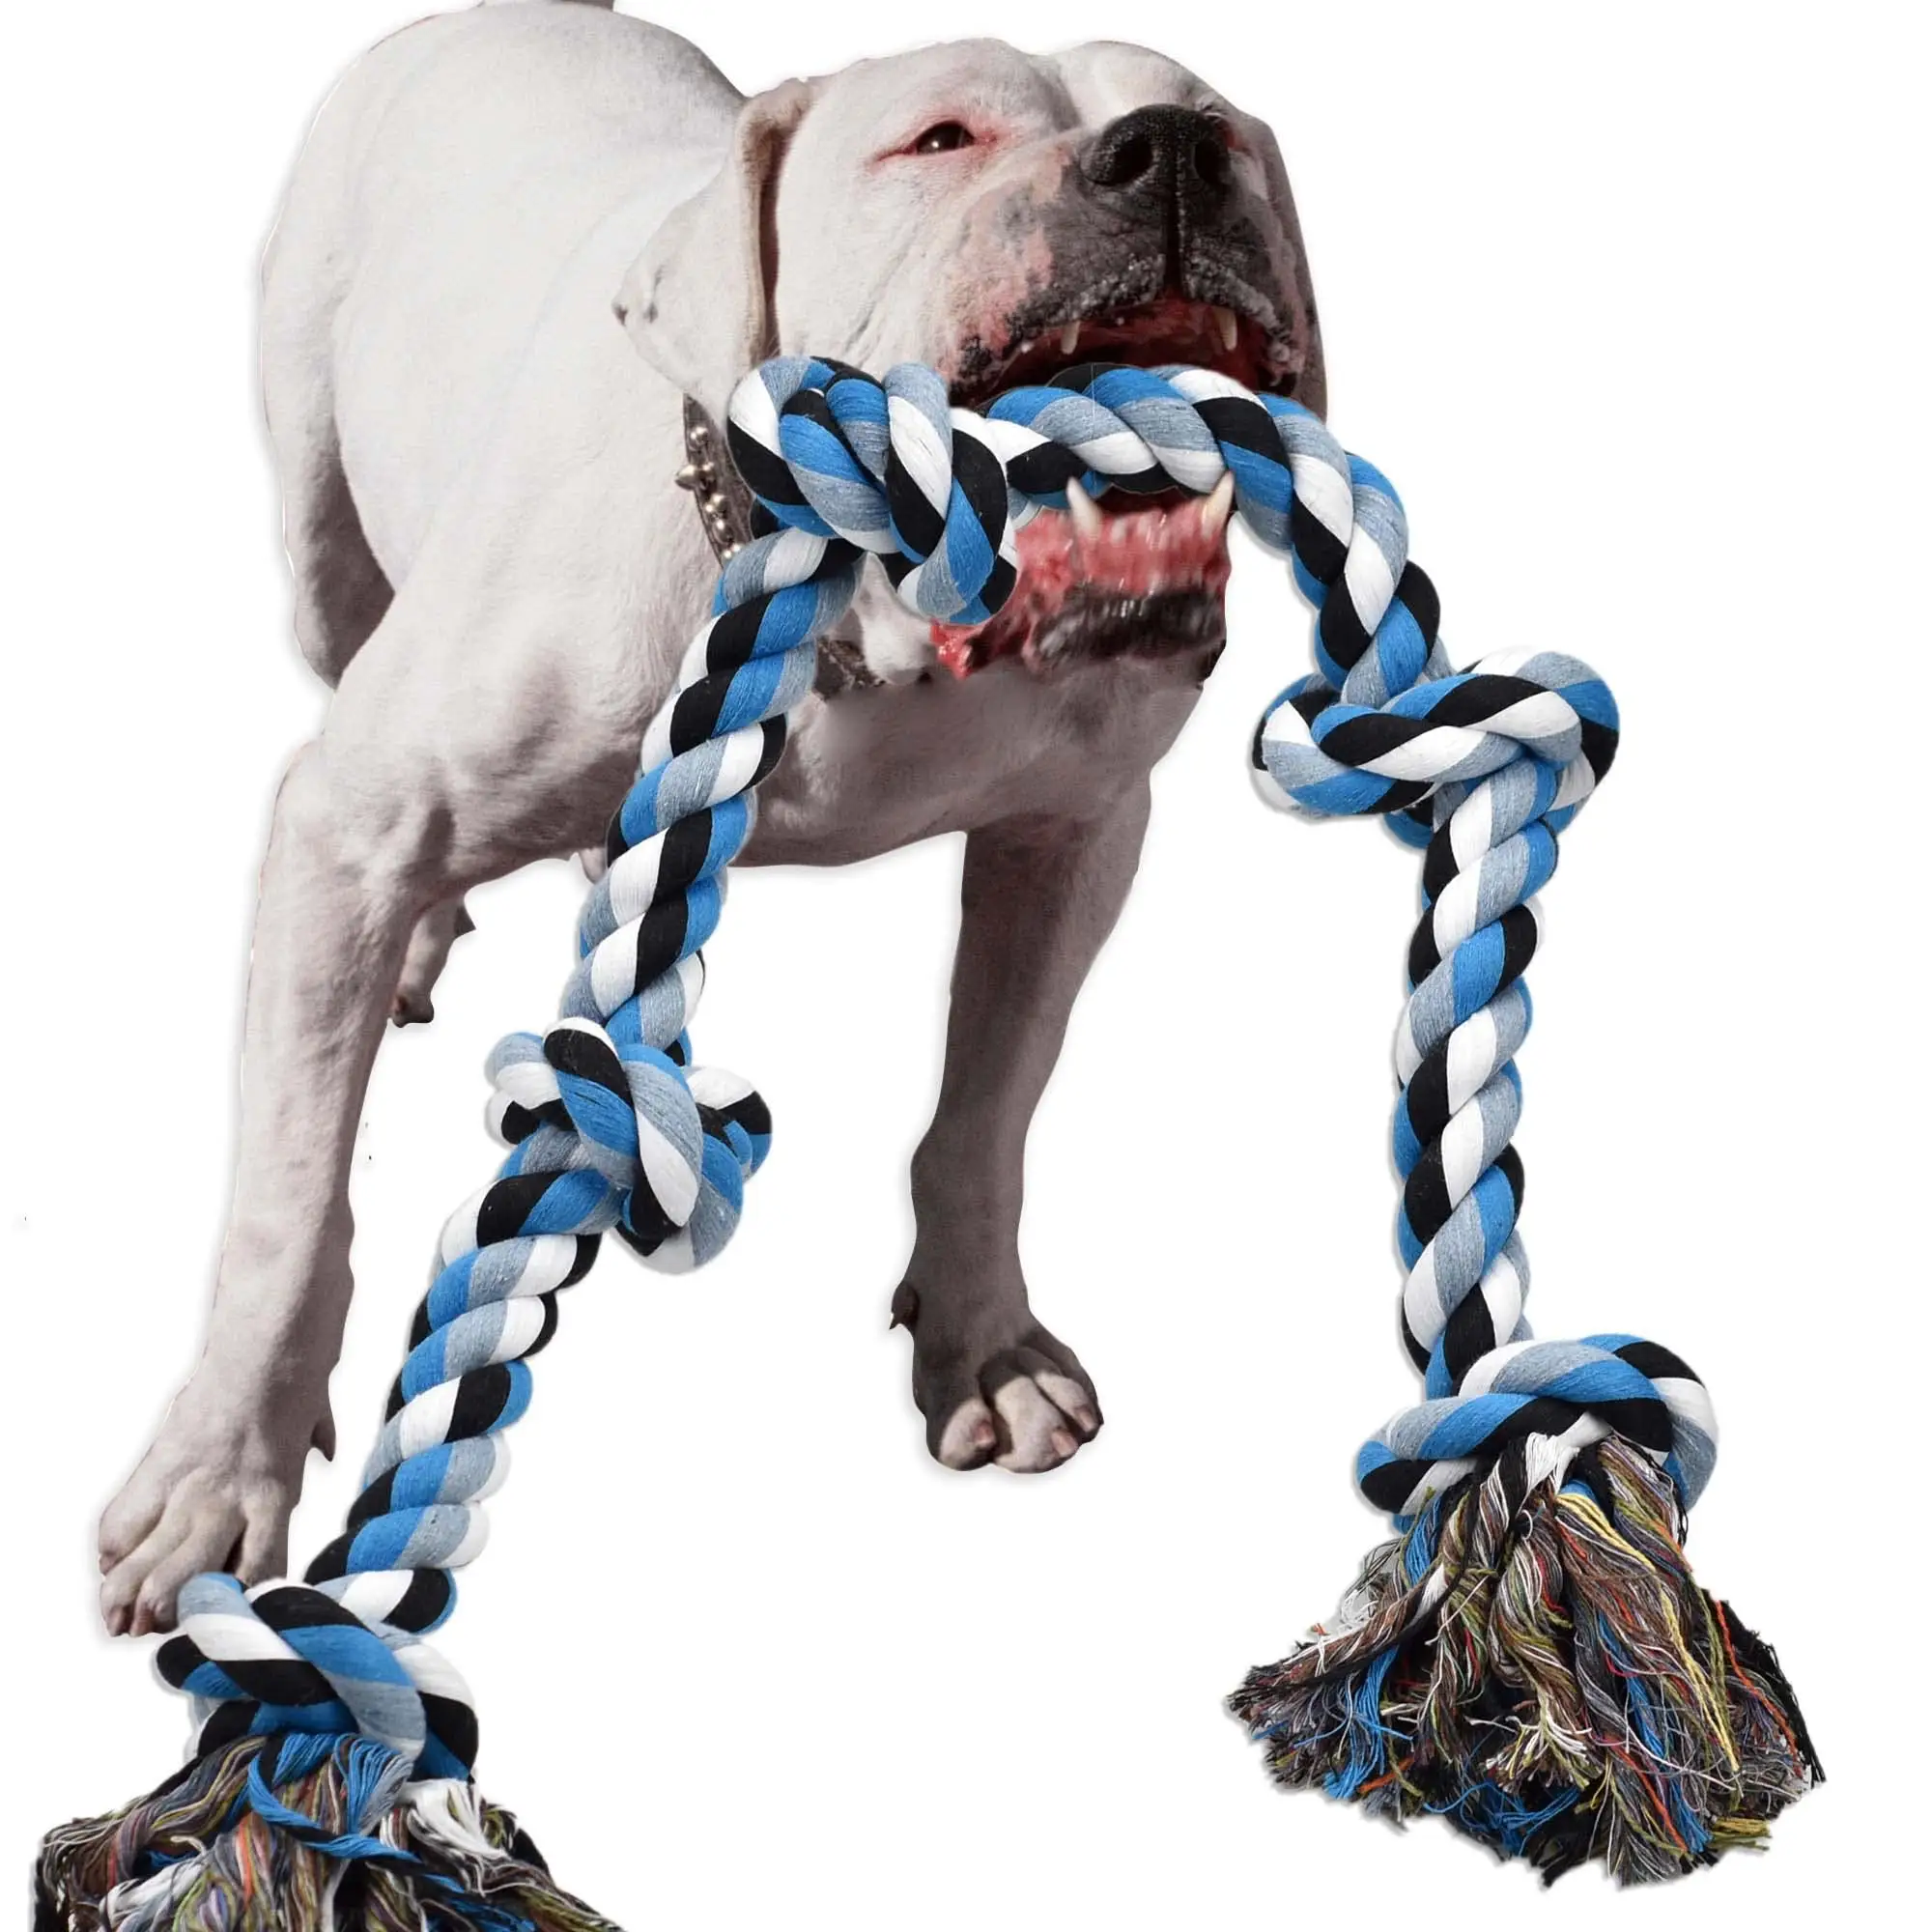 Unipopaw durable interactif giocattolo per cani in corda di cotone intrecciata colorata coloré tissé coton corde chien jouet